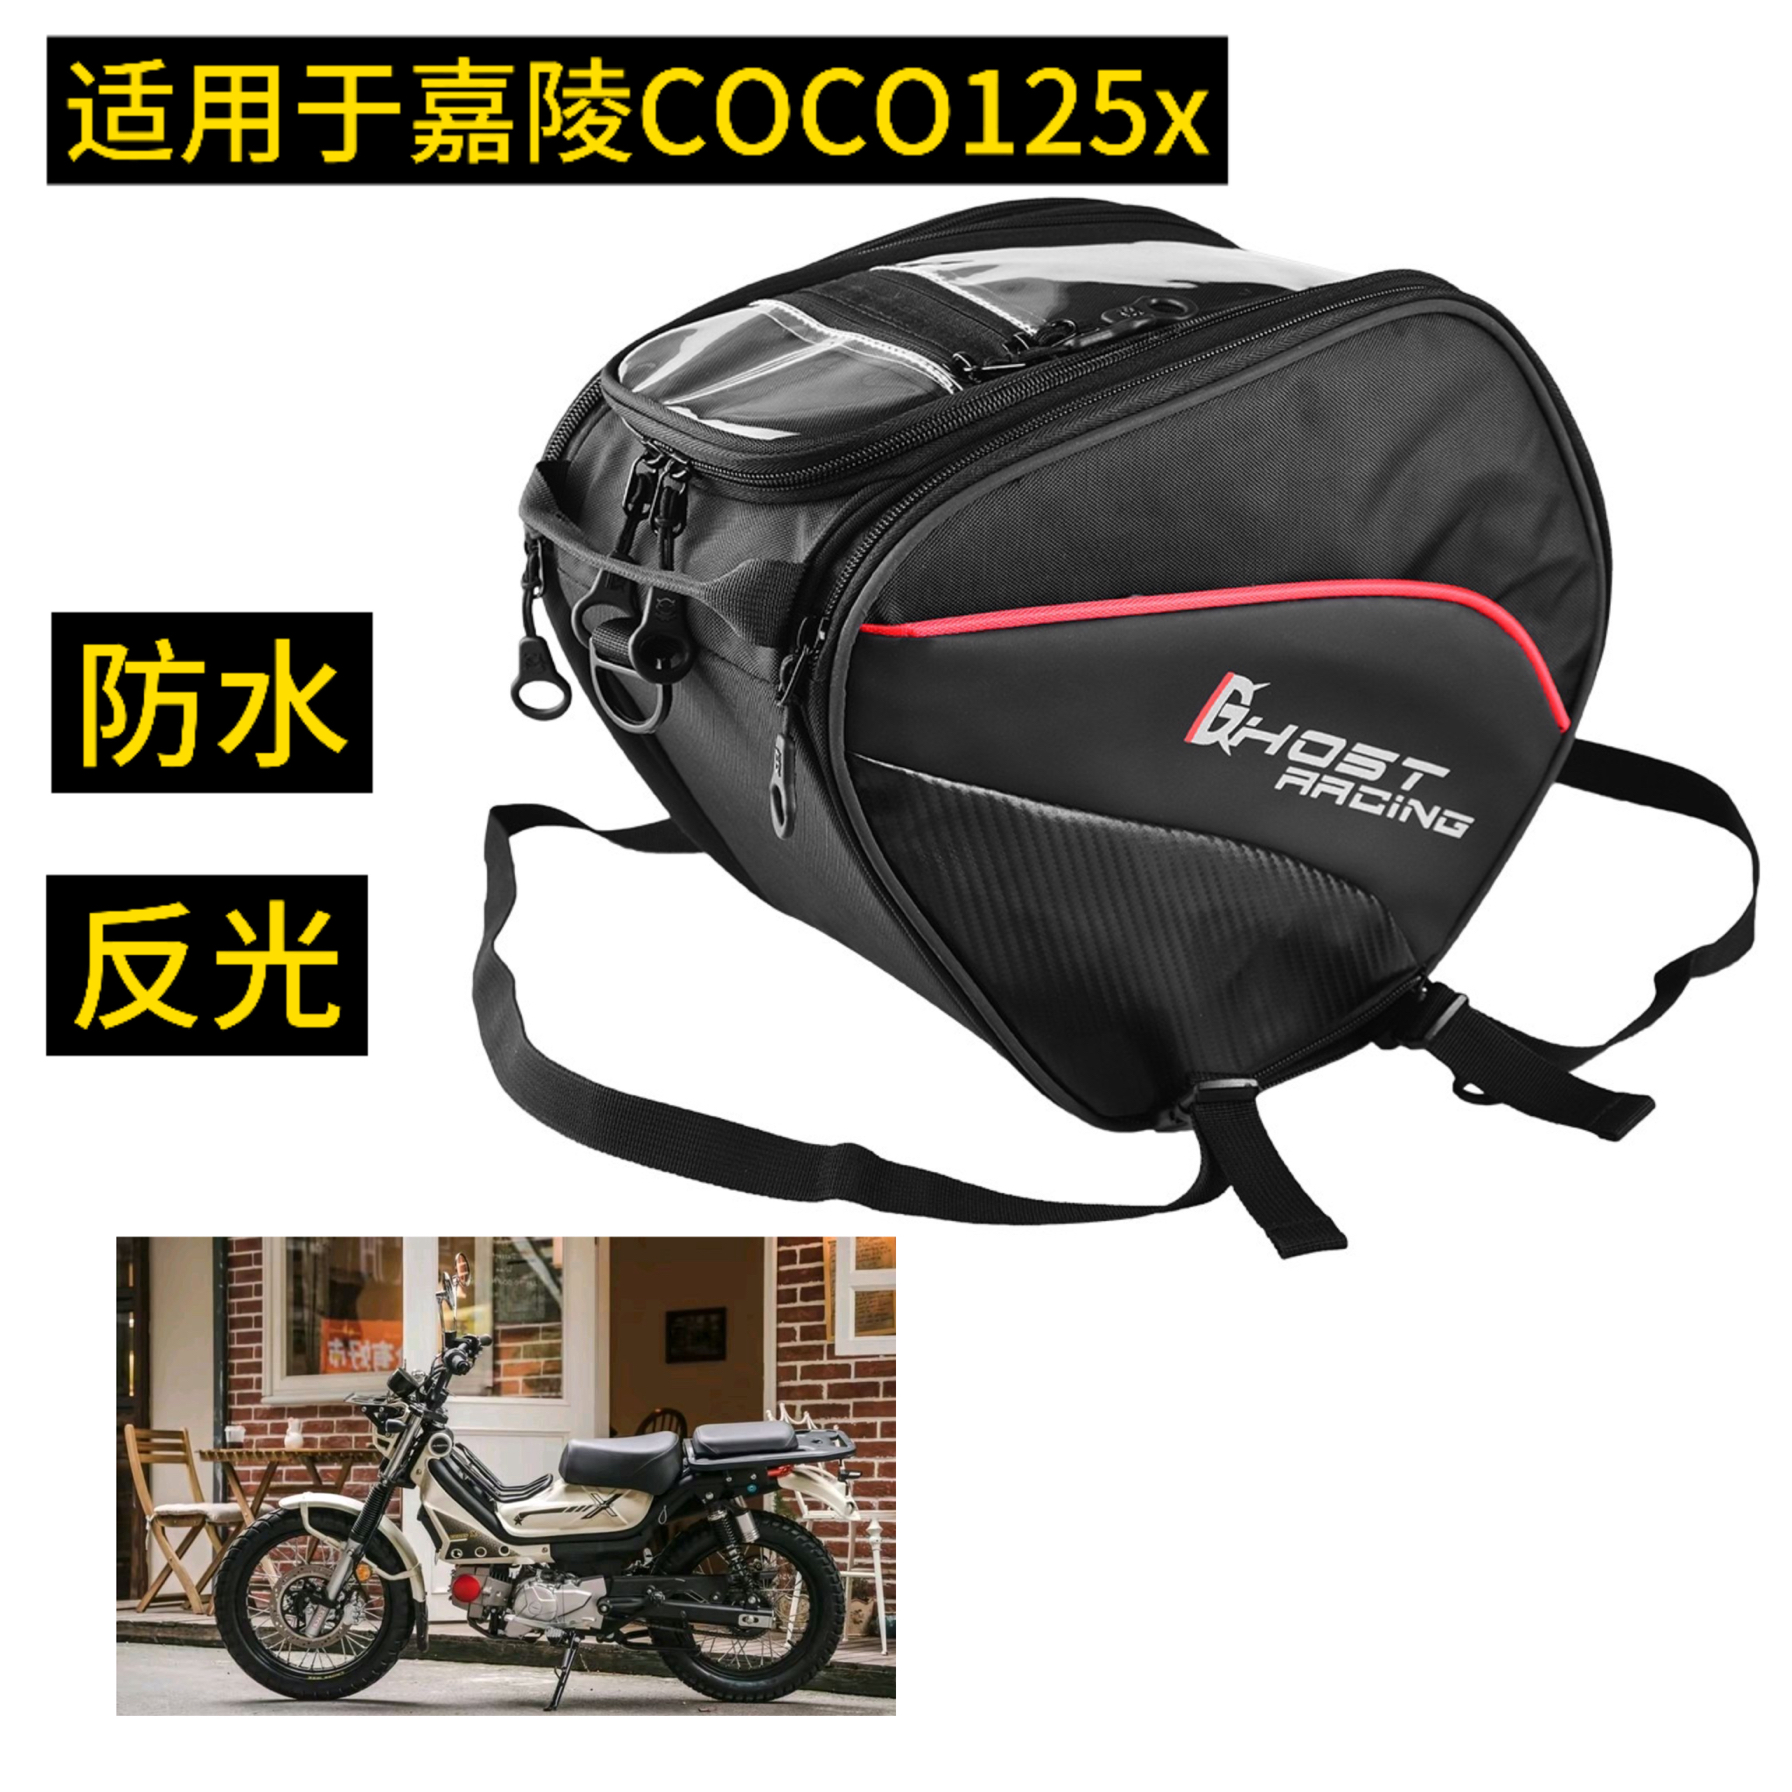 嘉陵COCO125X摩托车踏板包 弯梁车包前置包 油箱包 防水储物包